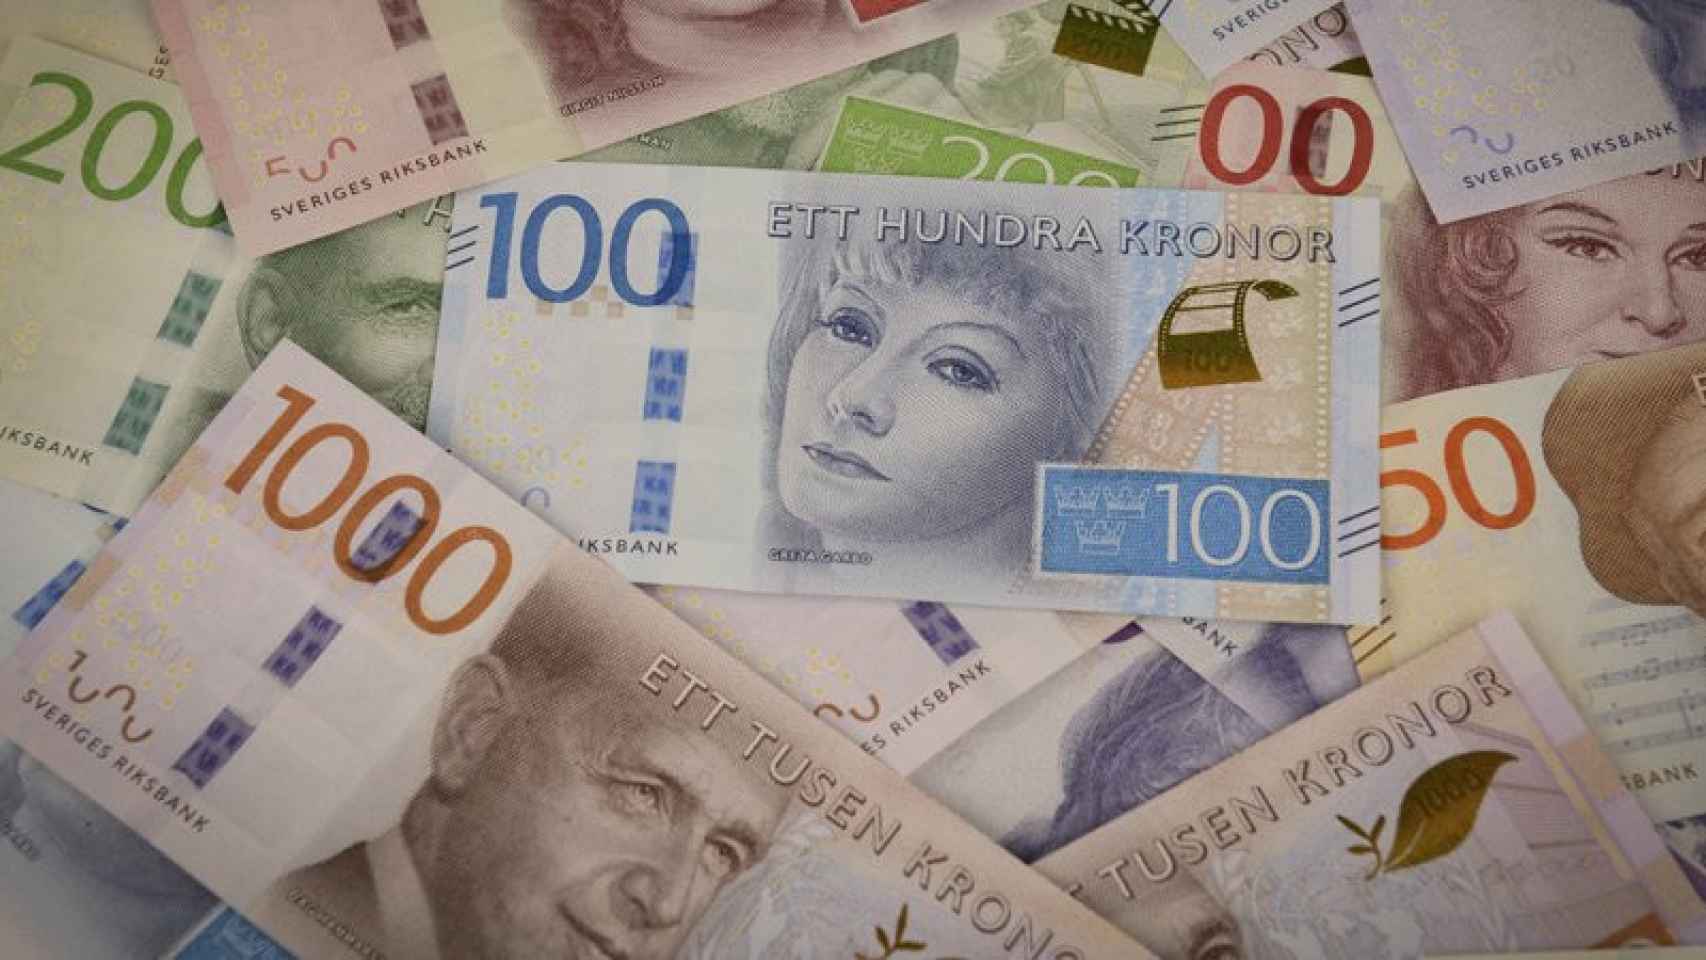 Billetes de coronas suecas.